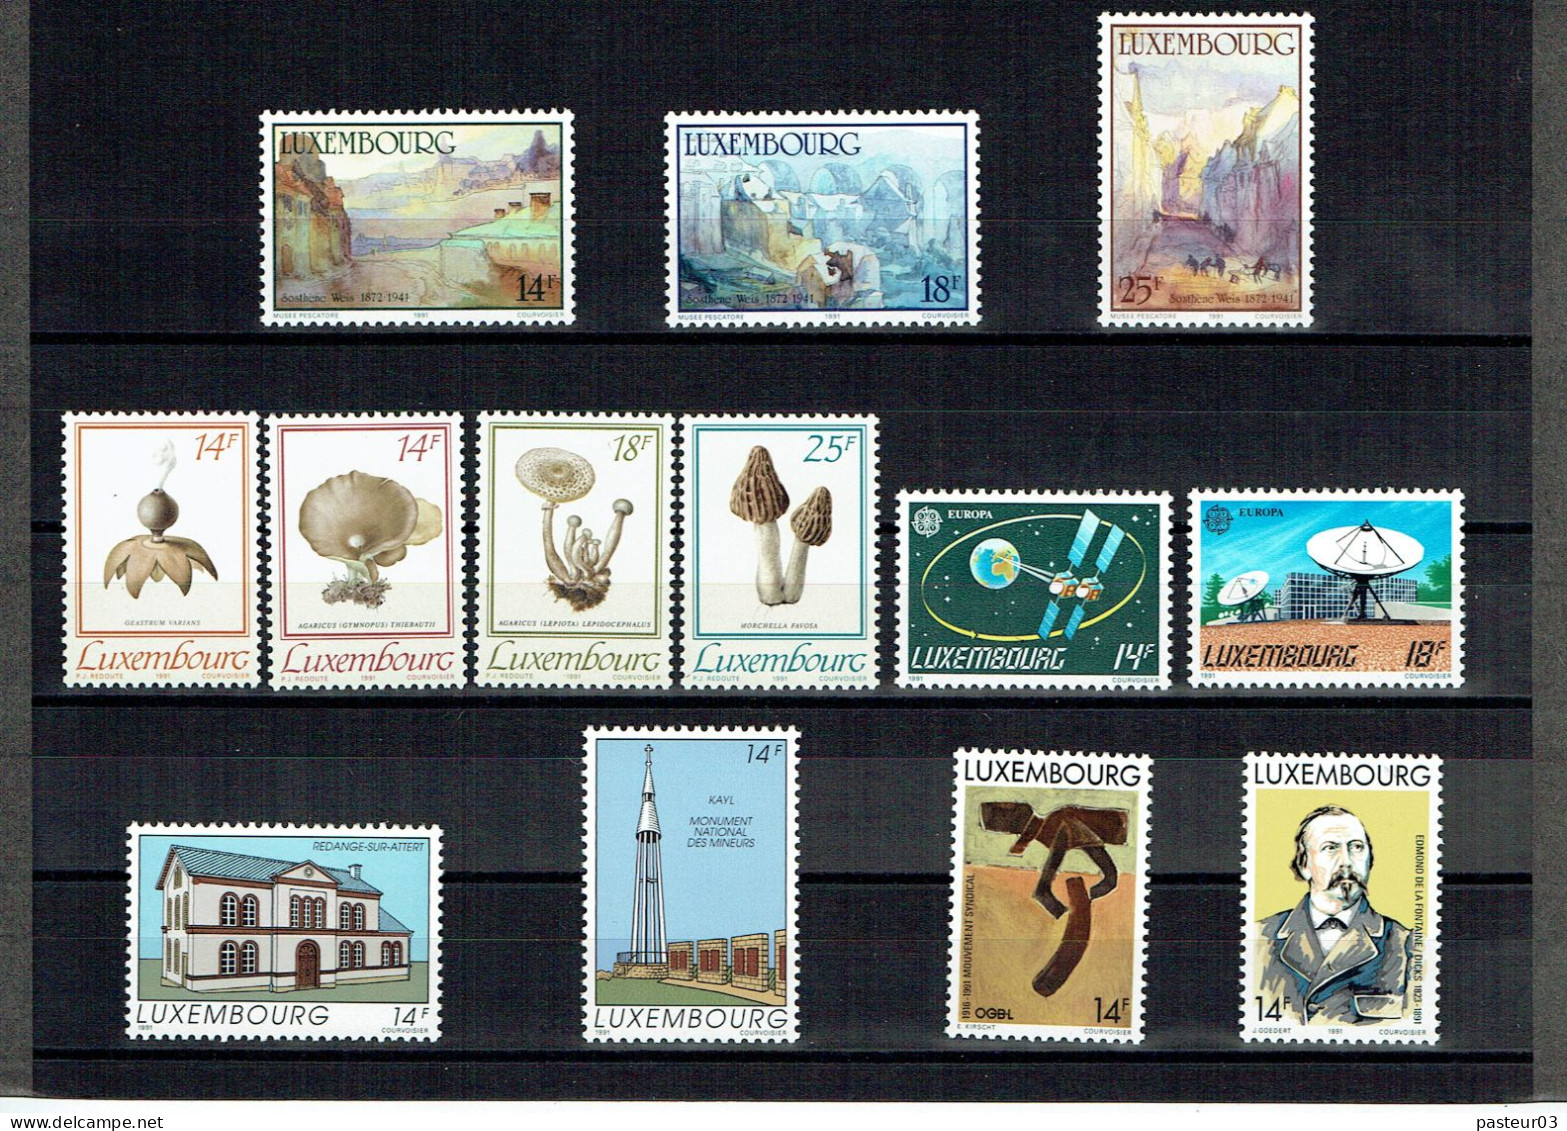 Luxembourg Joli Lot De 1989 à 1993 Présenté Dans Emballage Cartonné P & T Luxembourg Publicité Juvalux 1998 - Sammlungen